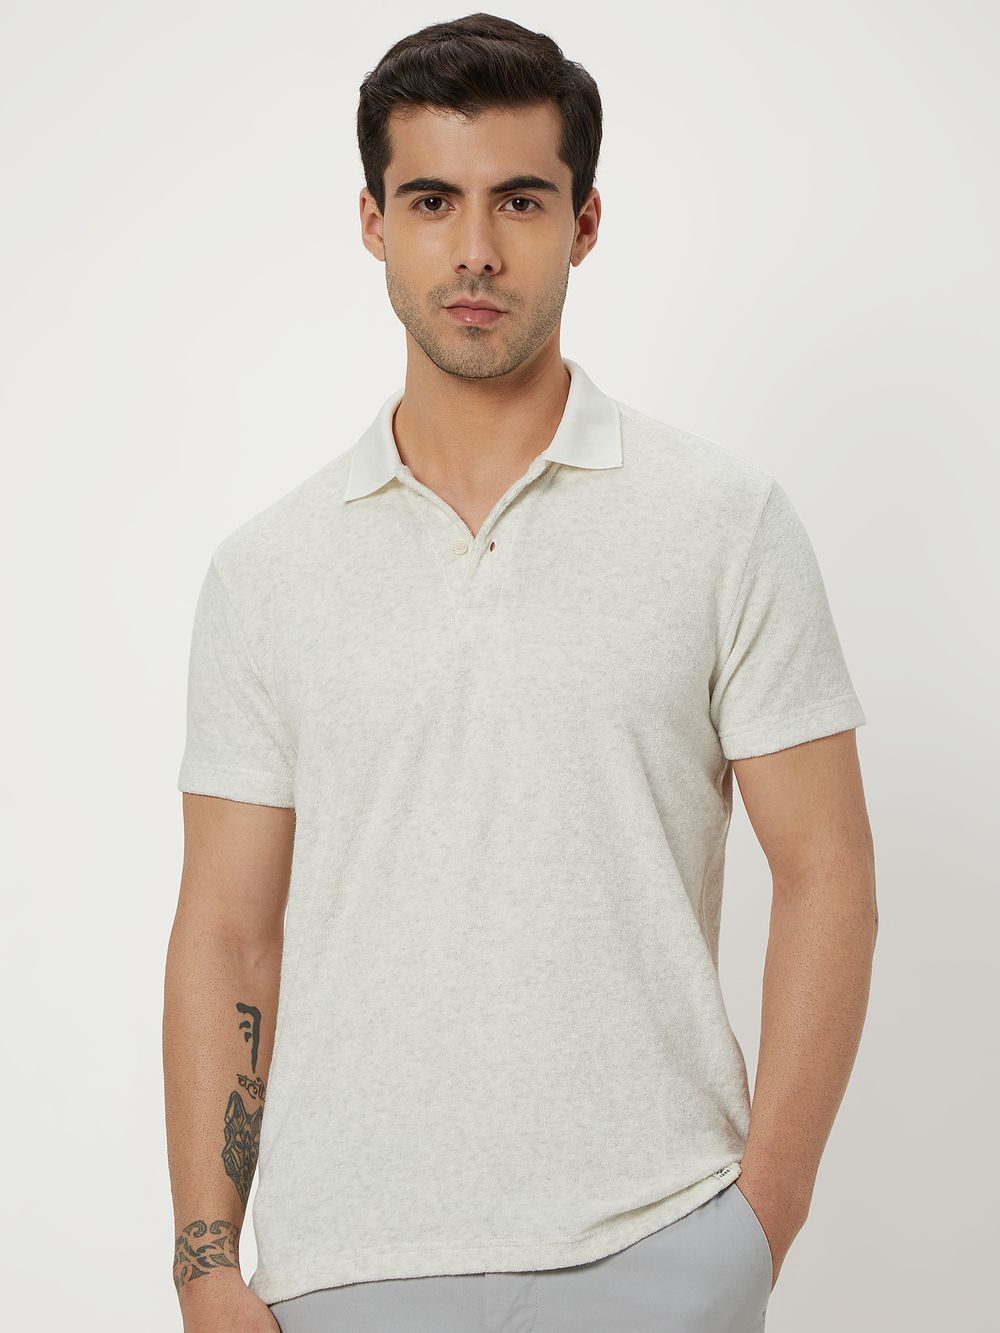 White Textured Polo Tee Shirt